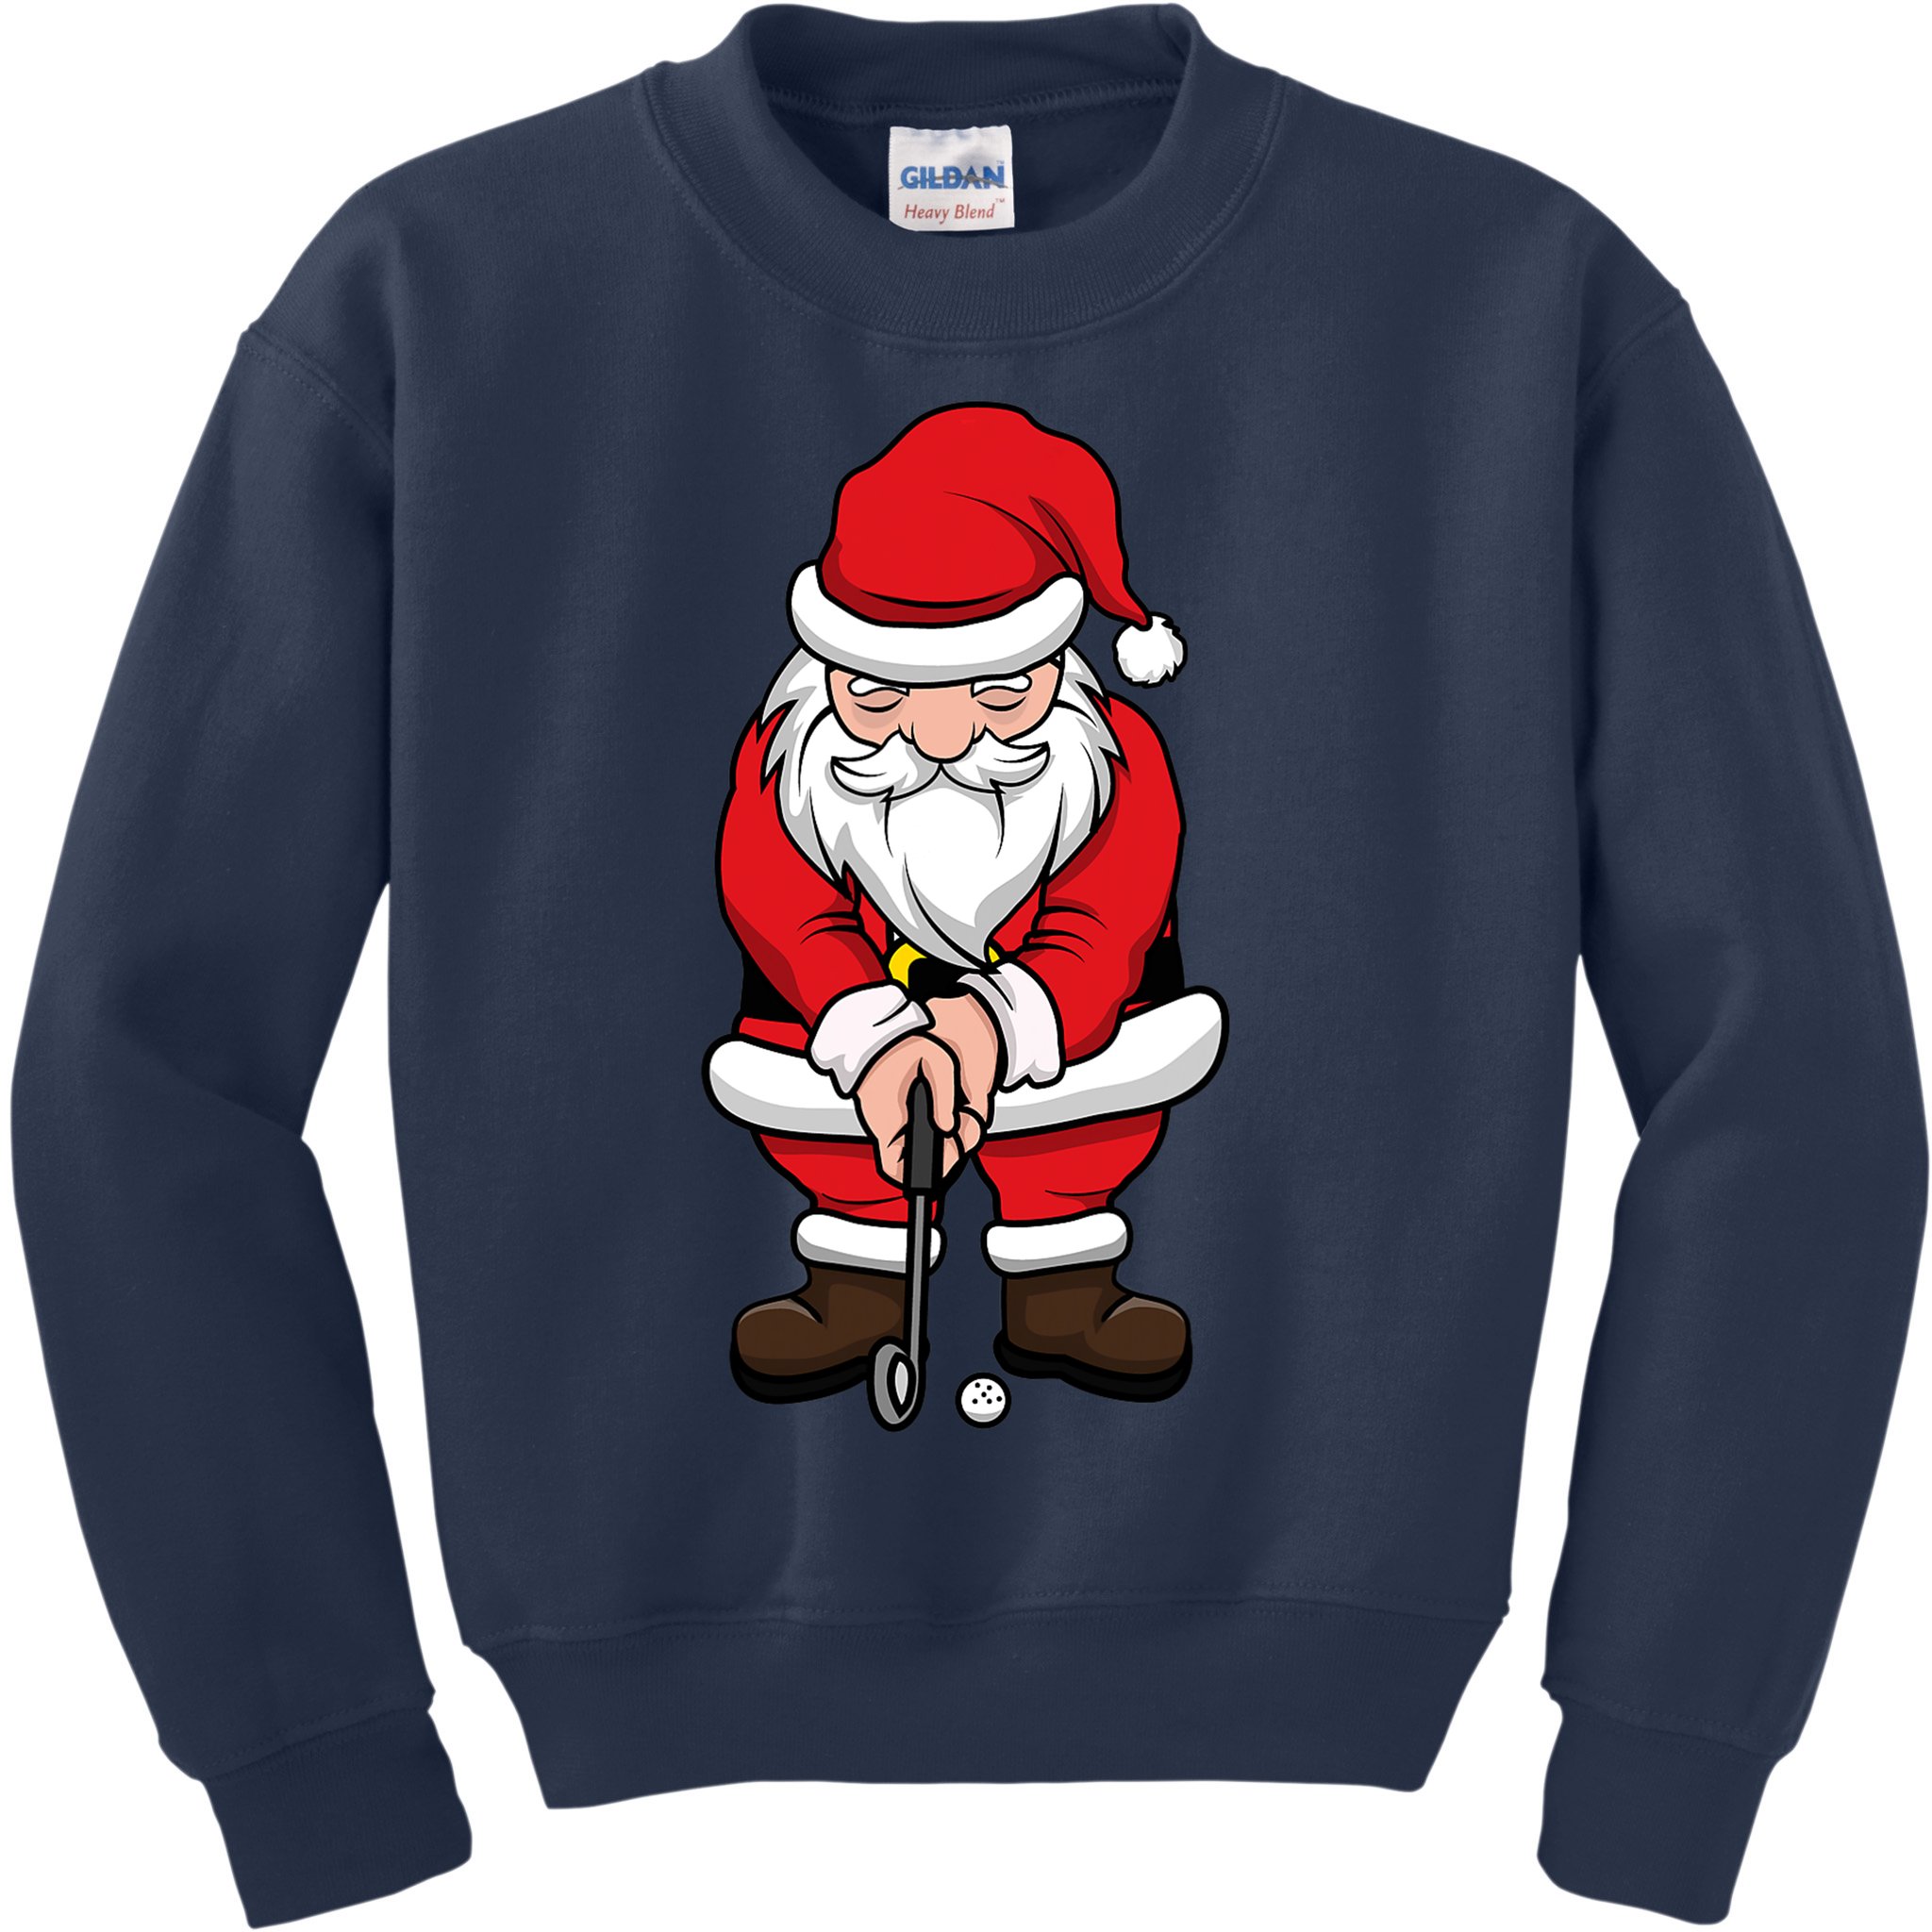 Skip Winter Golf All Year Christmas Sweatshirt, Golf Apparel